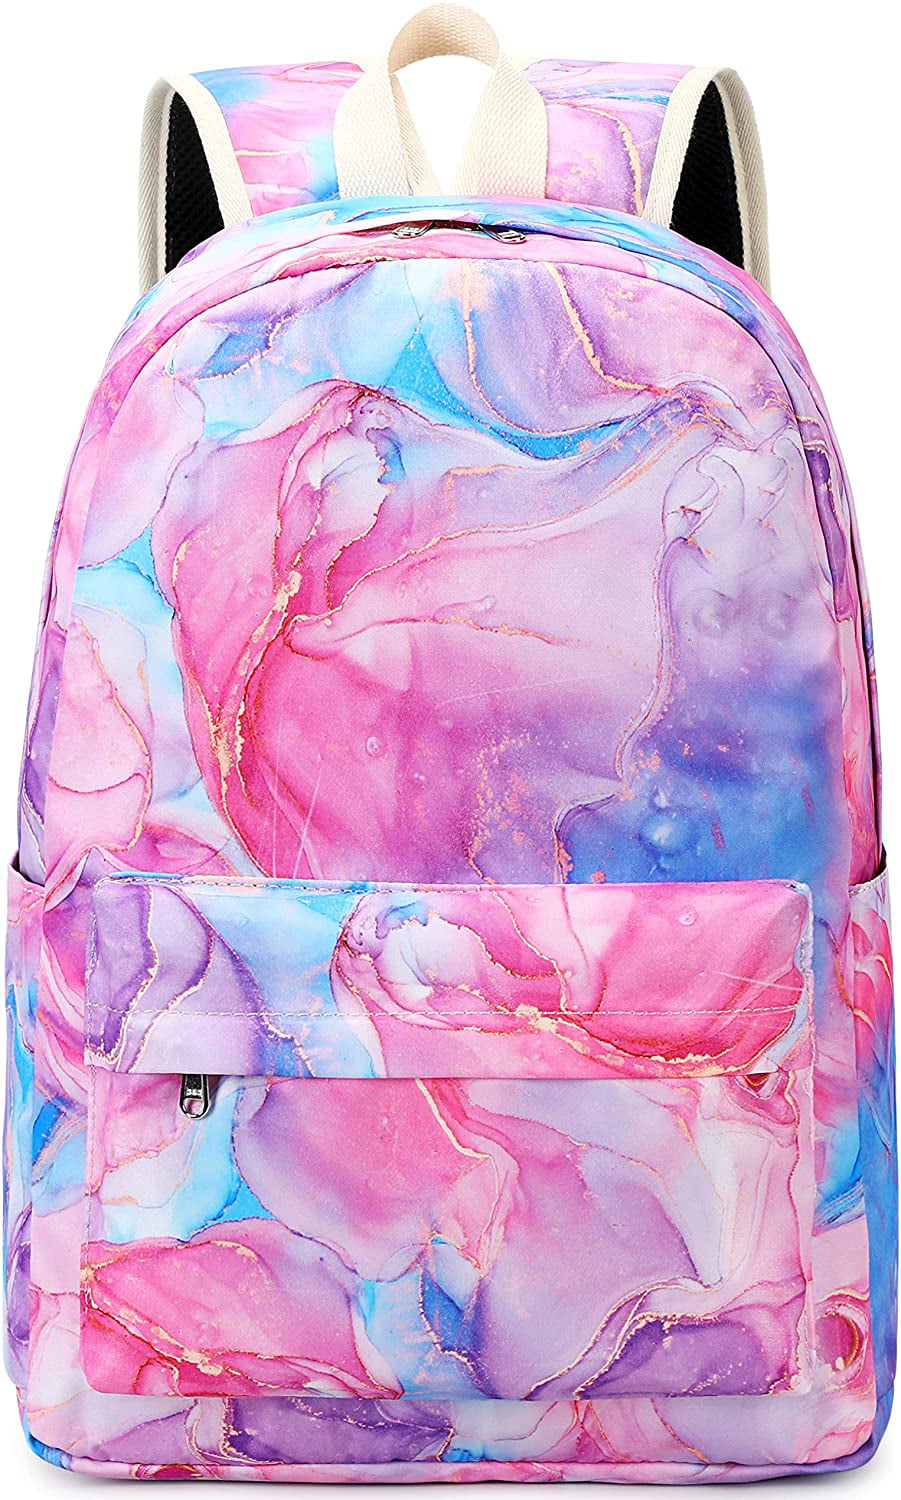 Marble School Backpack Teen Girls Lightweight College Waterproof School Laptop Casual Backpack 